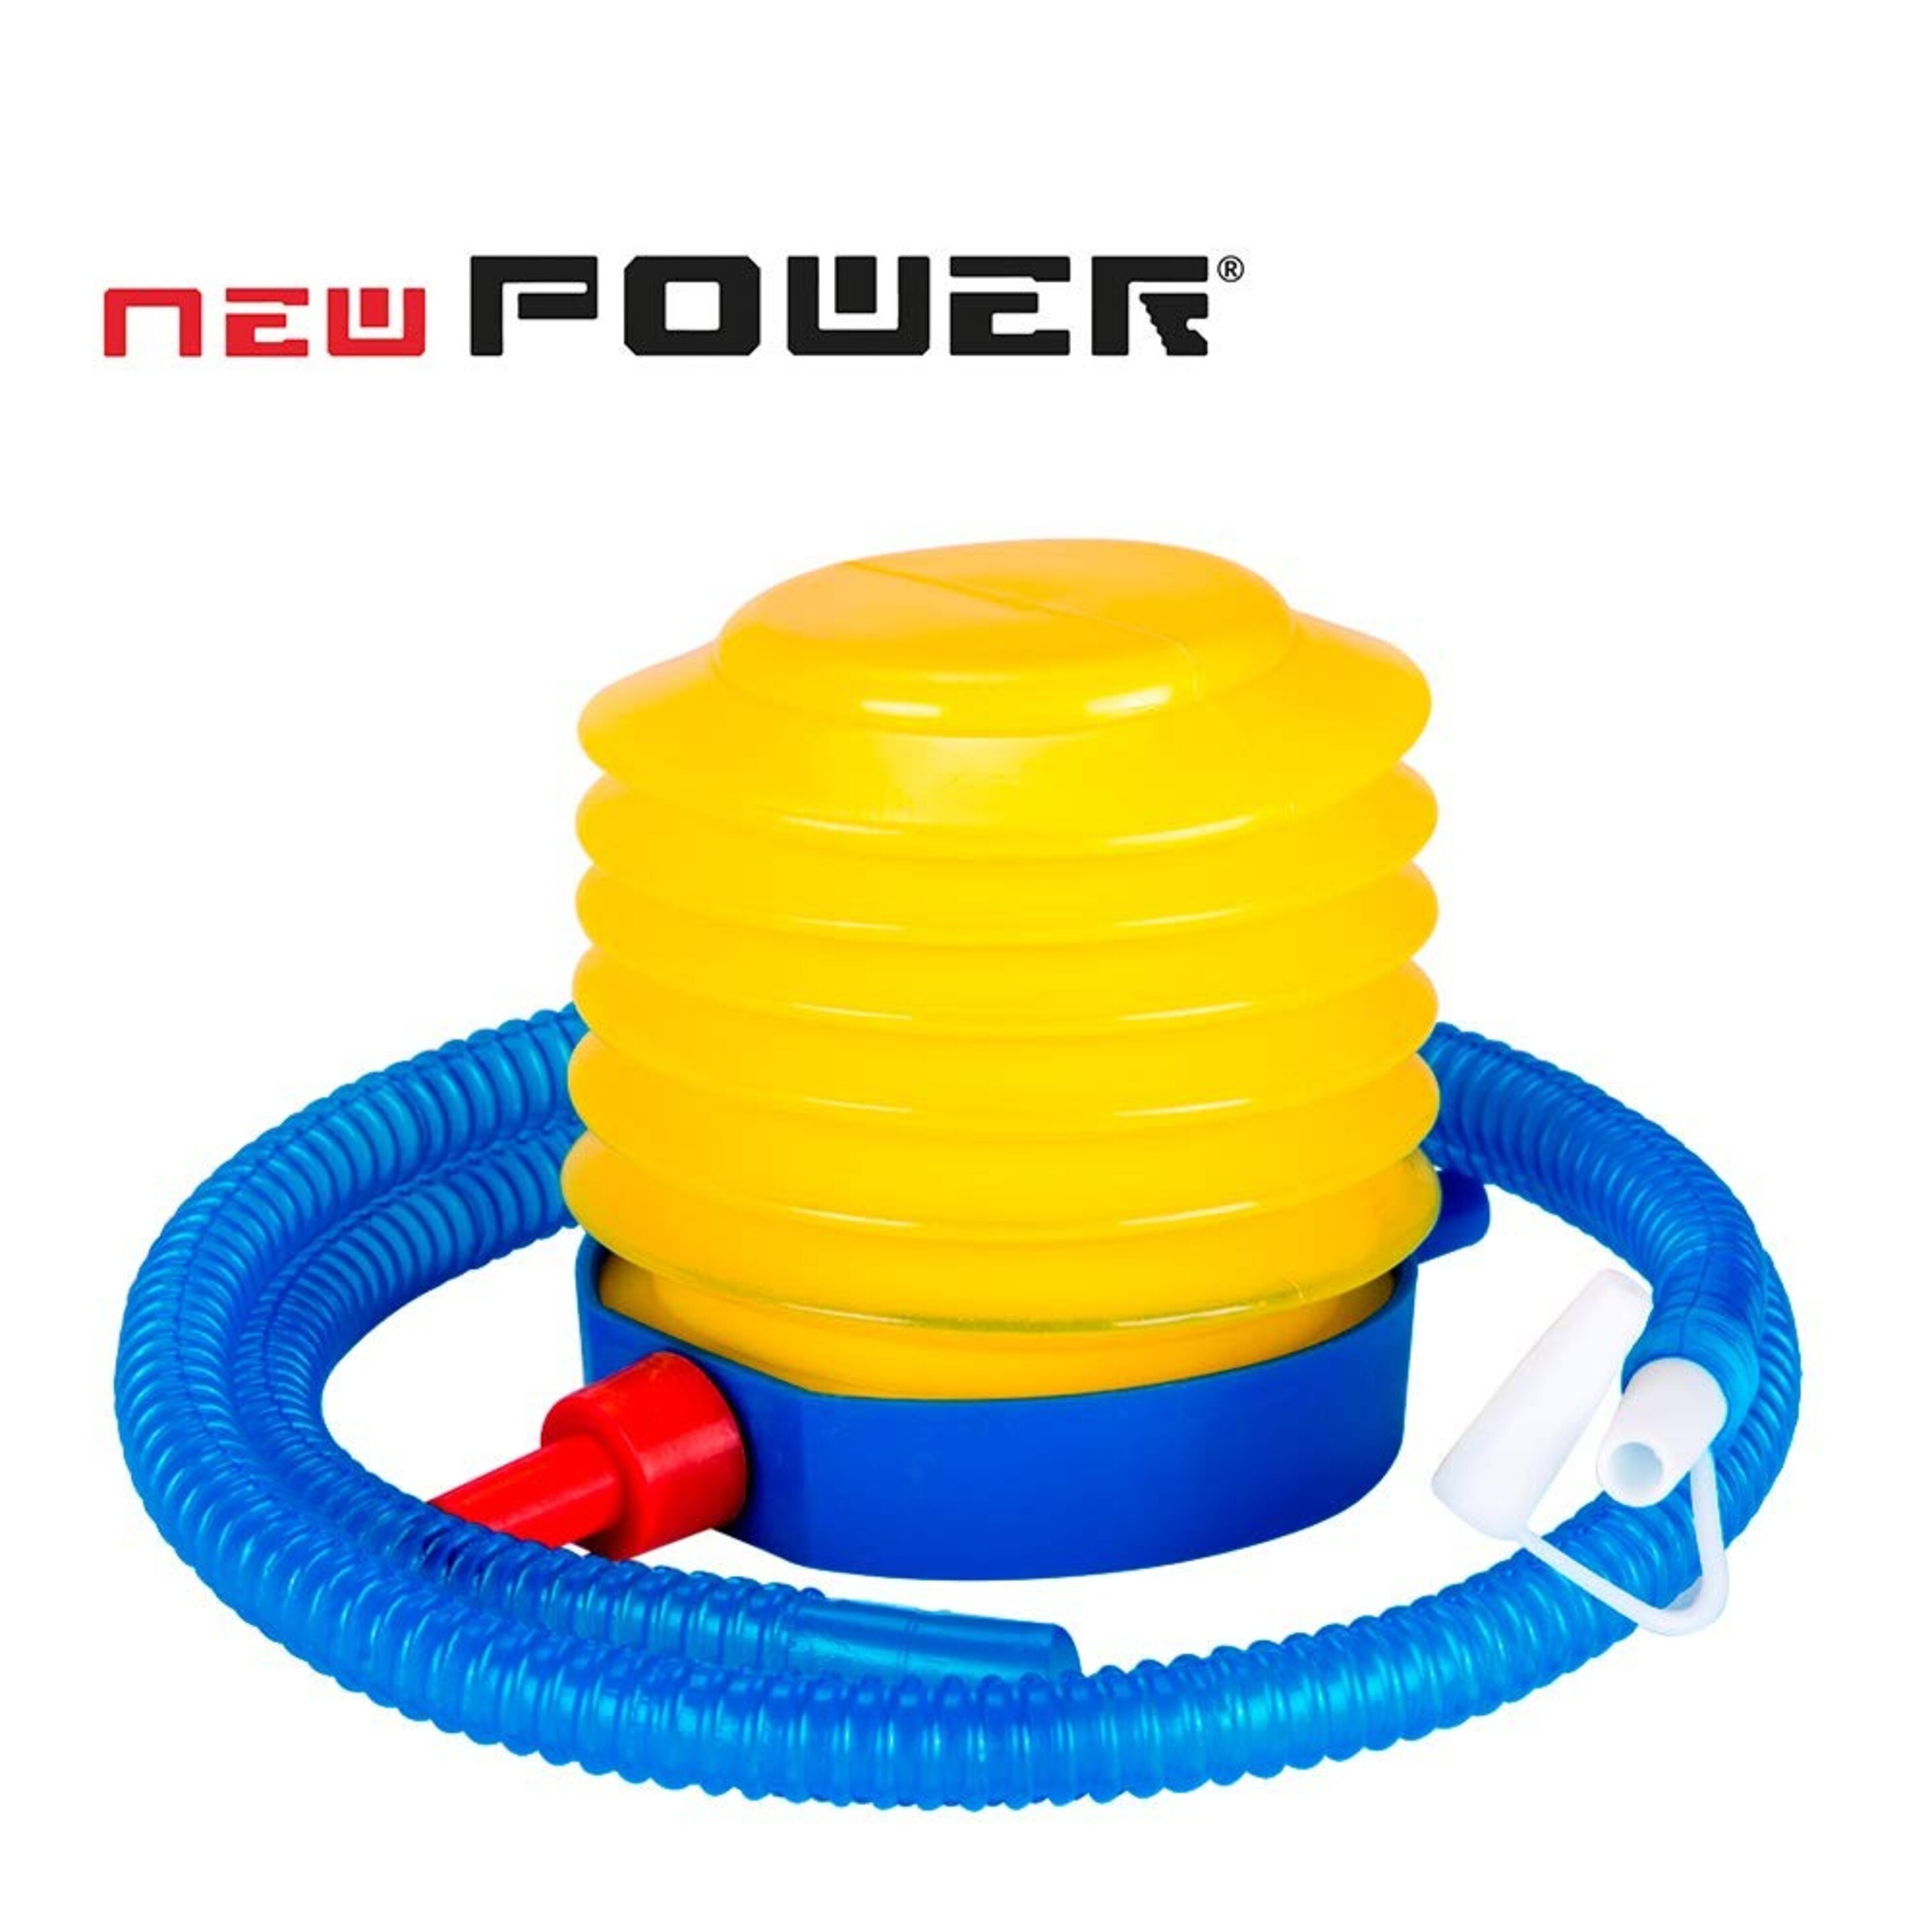 Newpower-hinchador De Pie Manual- Fitball,semiesferas De Equilibrio Y Flotadores